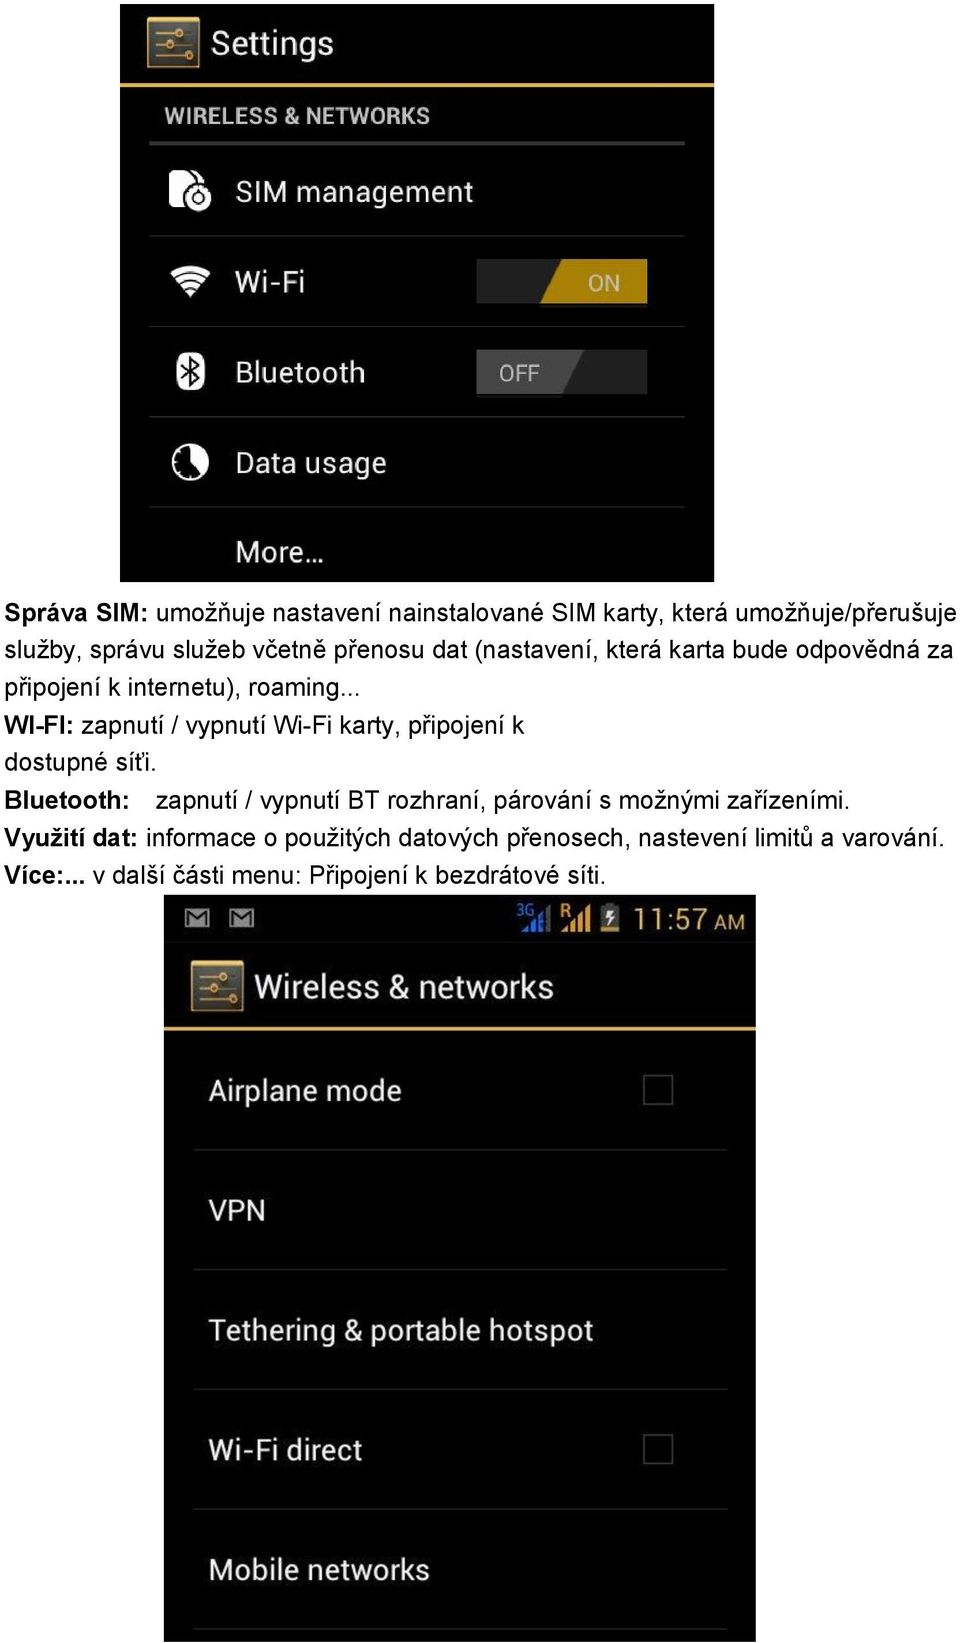 .. WI-FI: zapnutí / vypnutí Wi-Fi karty, připojení k dostupné síťi.